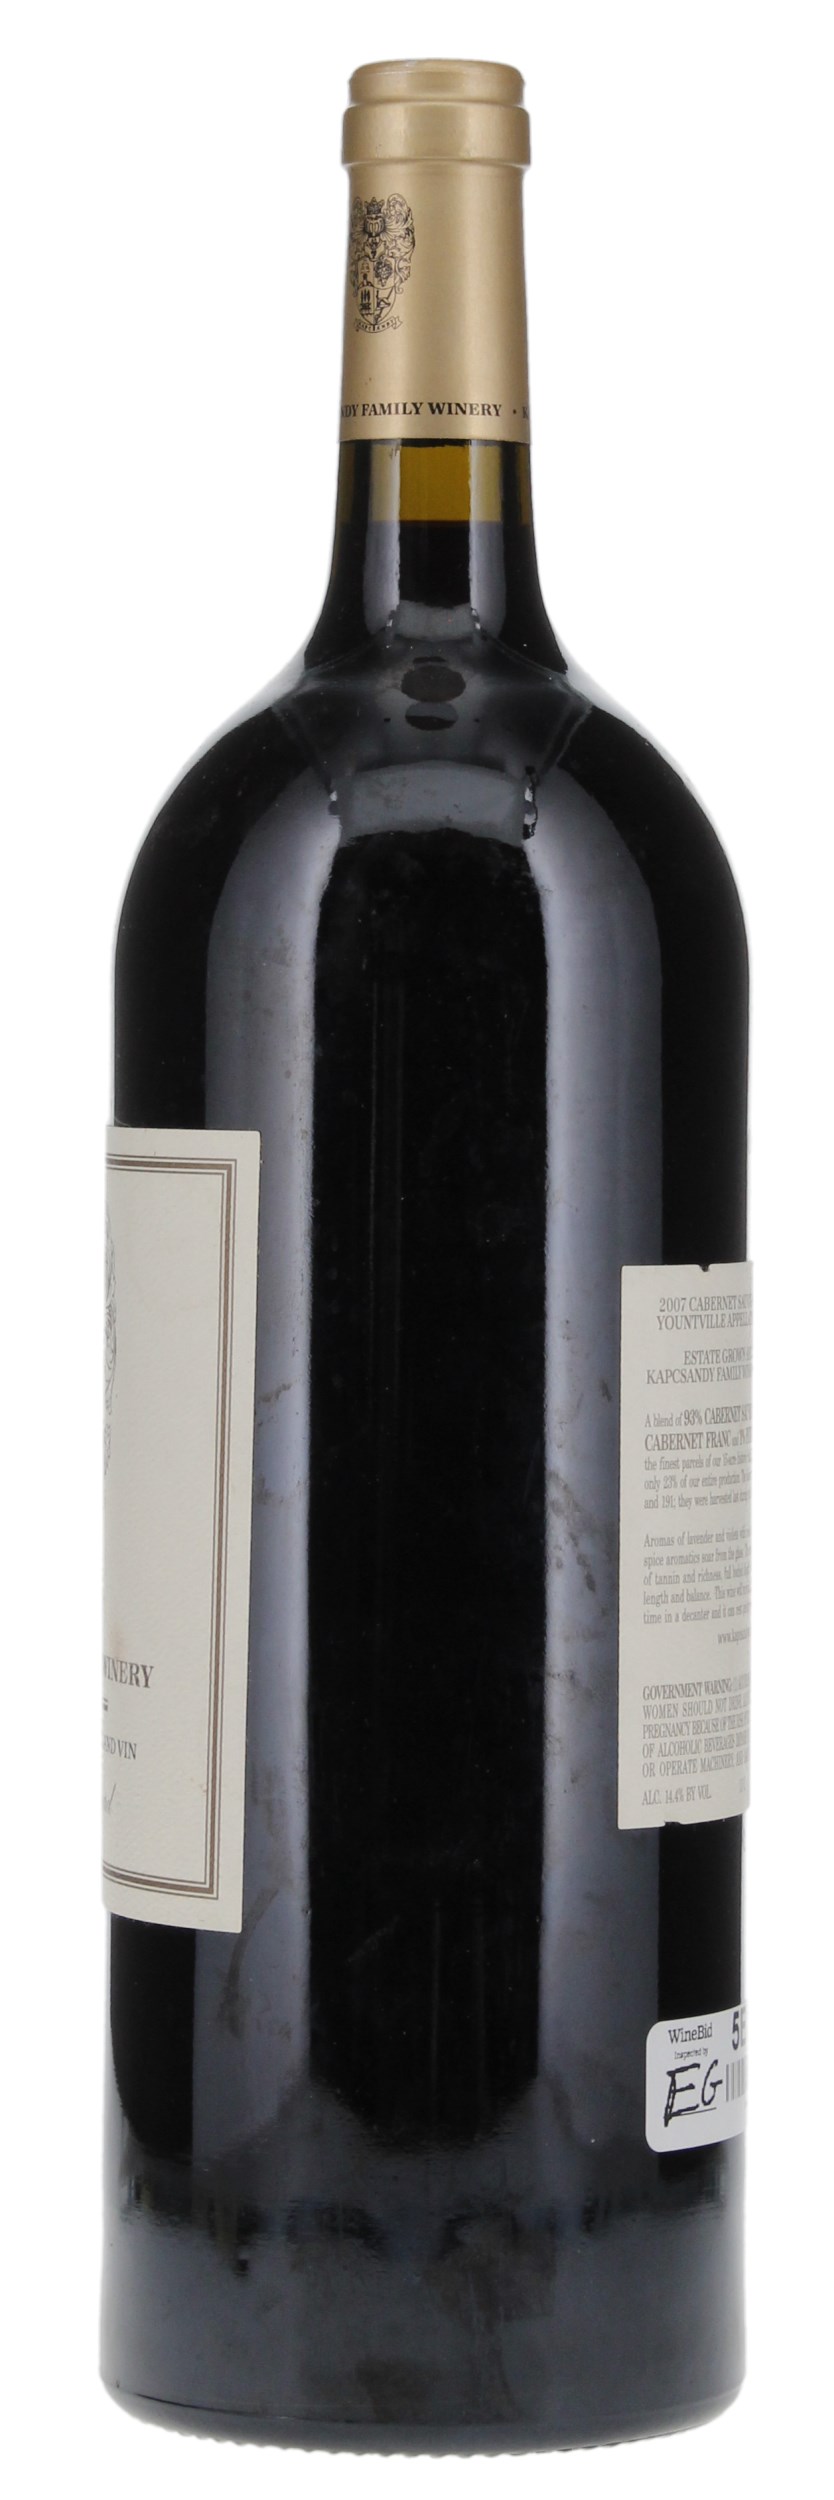 2007 Kapcsandy Family Wines State Lane Vineyard Grand Vin Cabernet Sauvignon, 1.5ltr